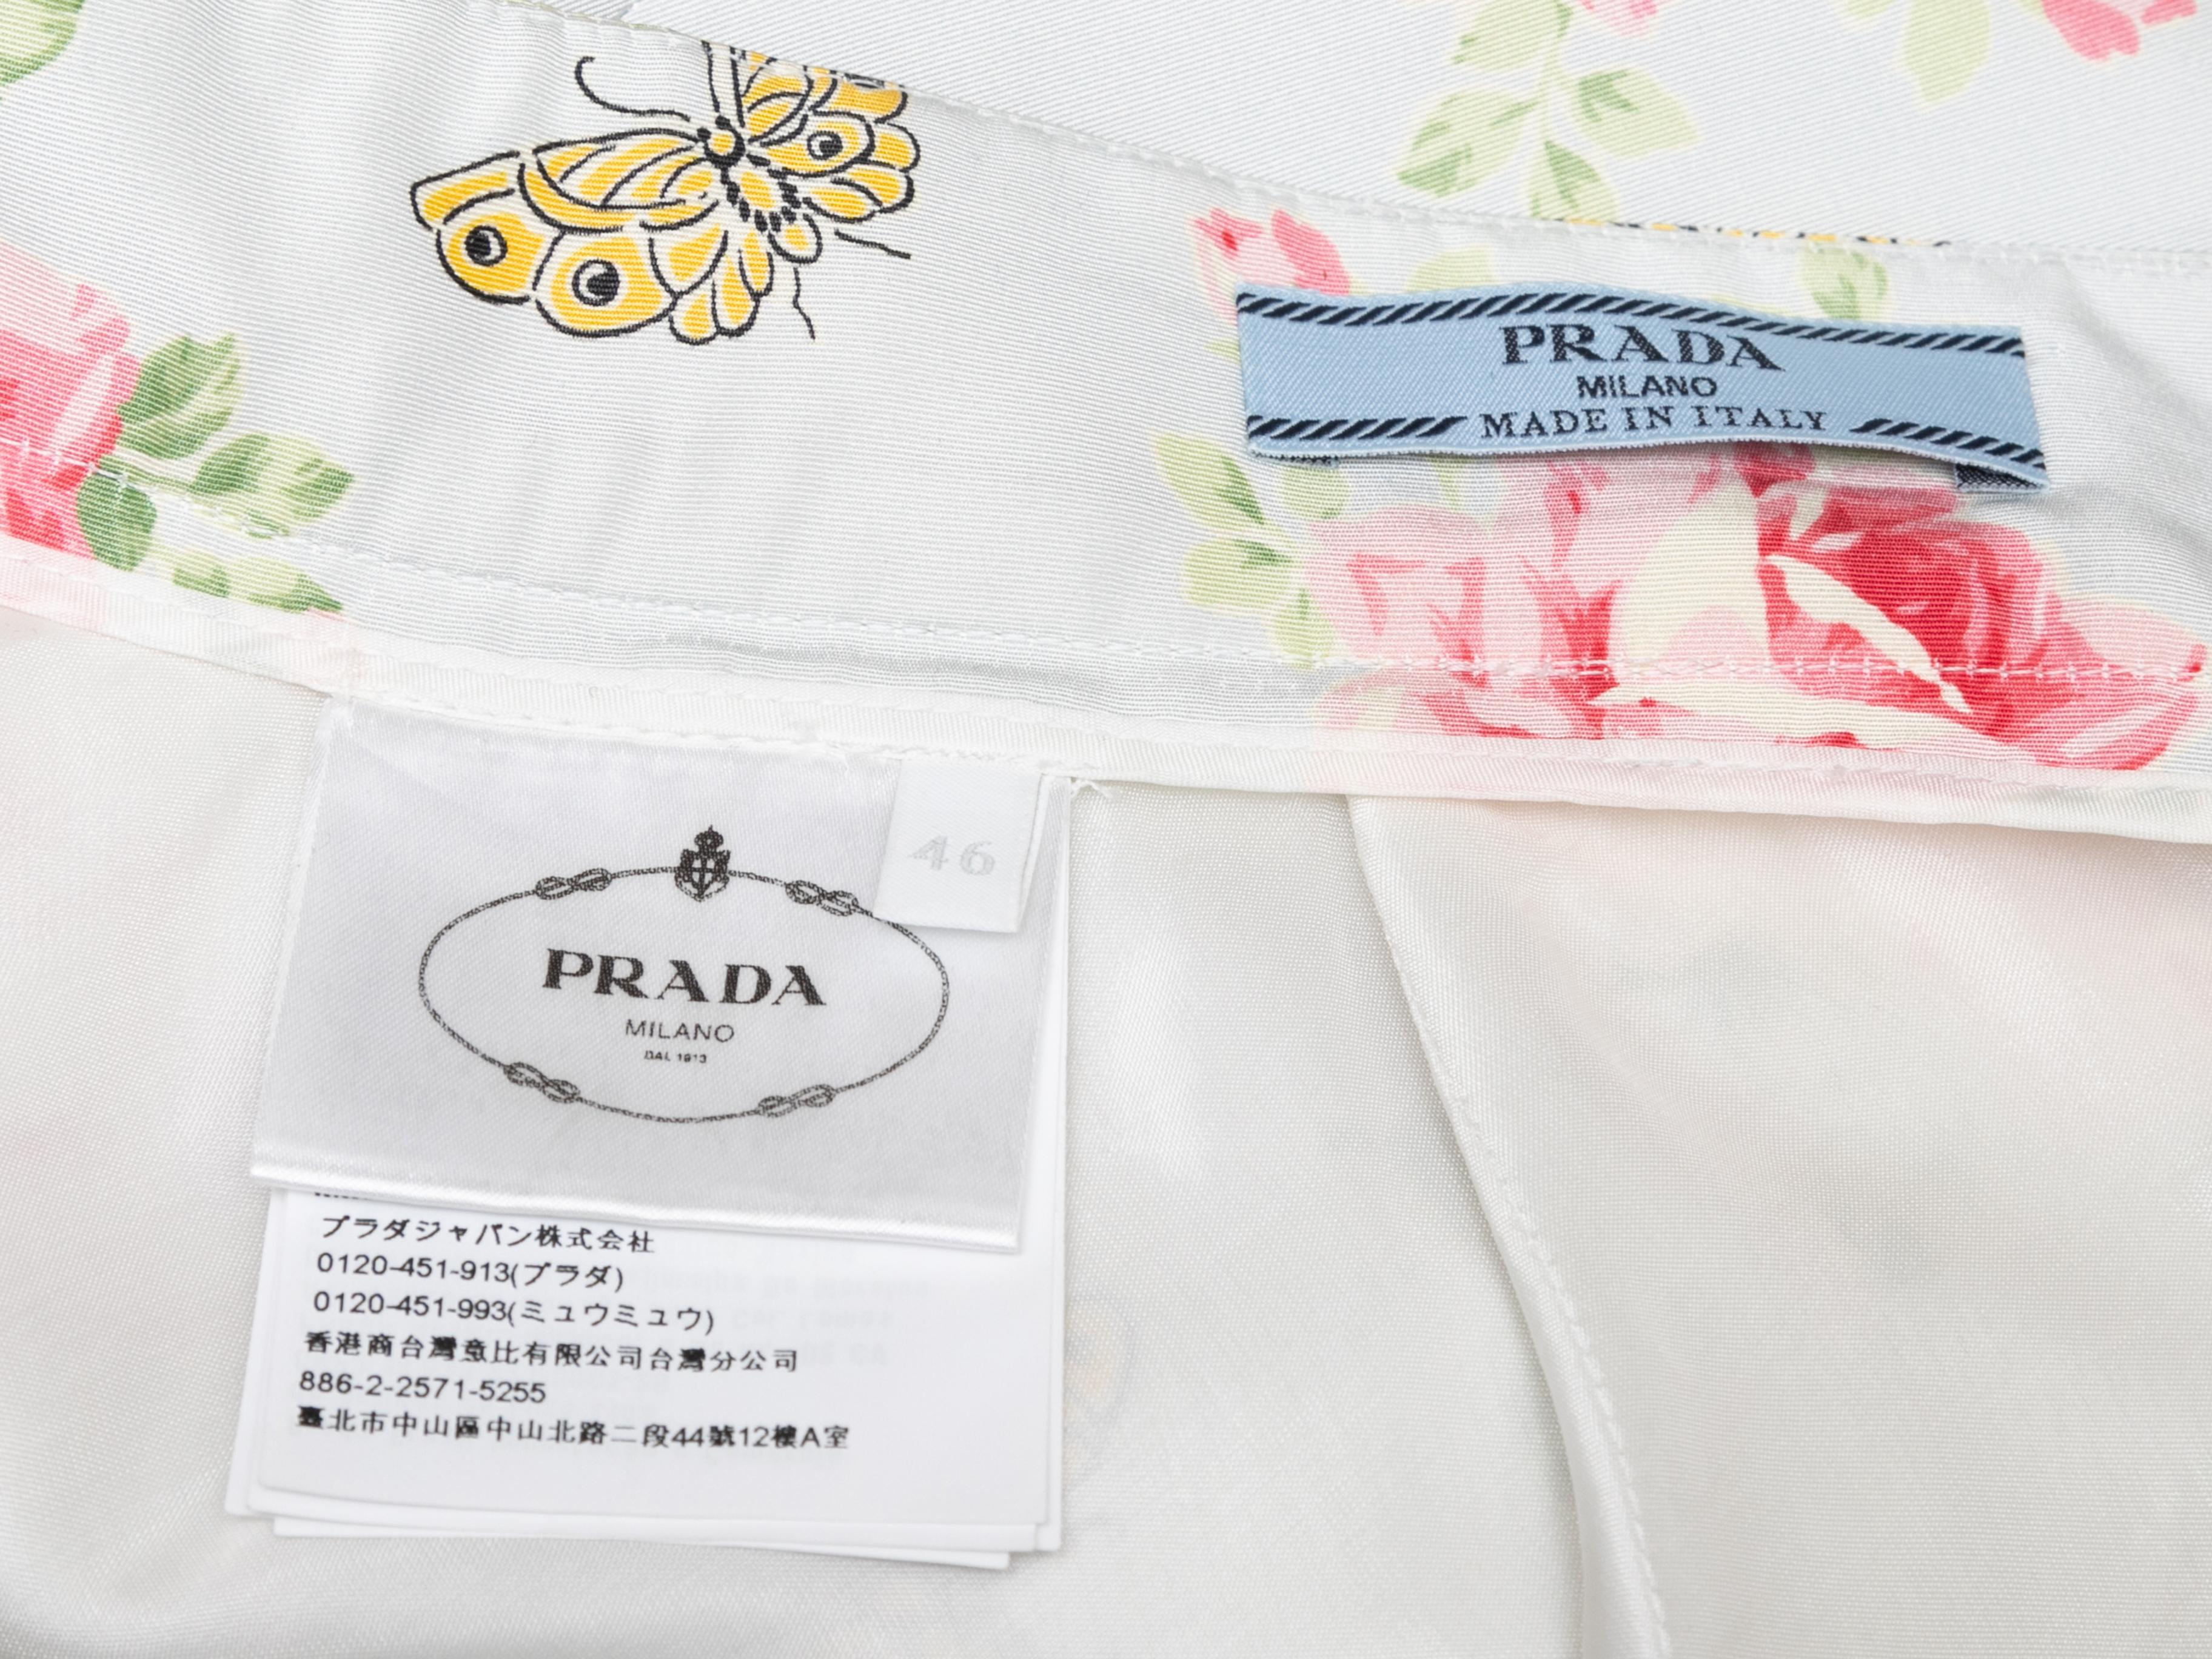 Jupe en soie blanche et multicolore 2019 imprimée de roses et de papillons, signée Prada. Fermeture à glissière au centre du dos. Taille 32